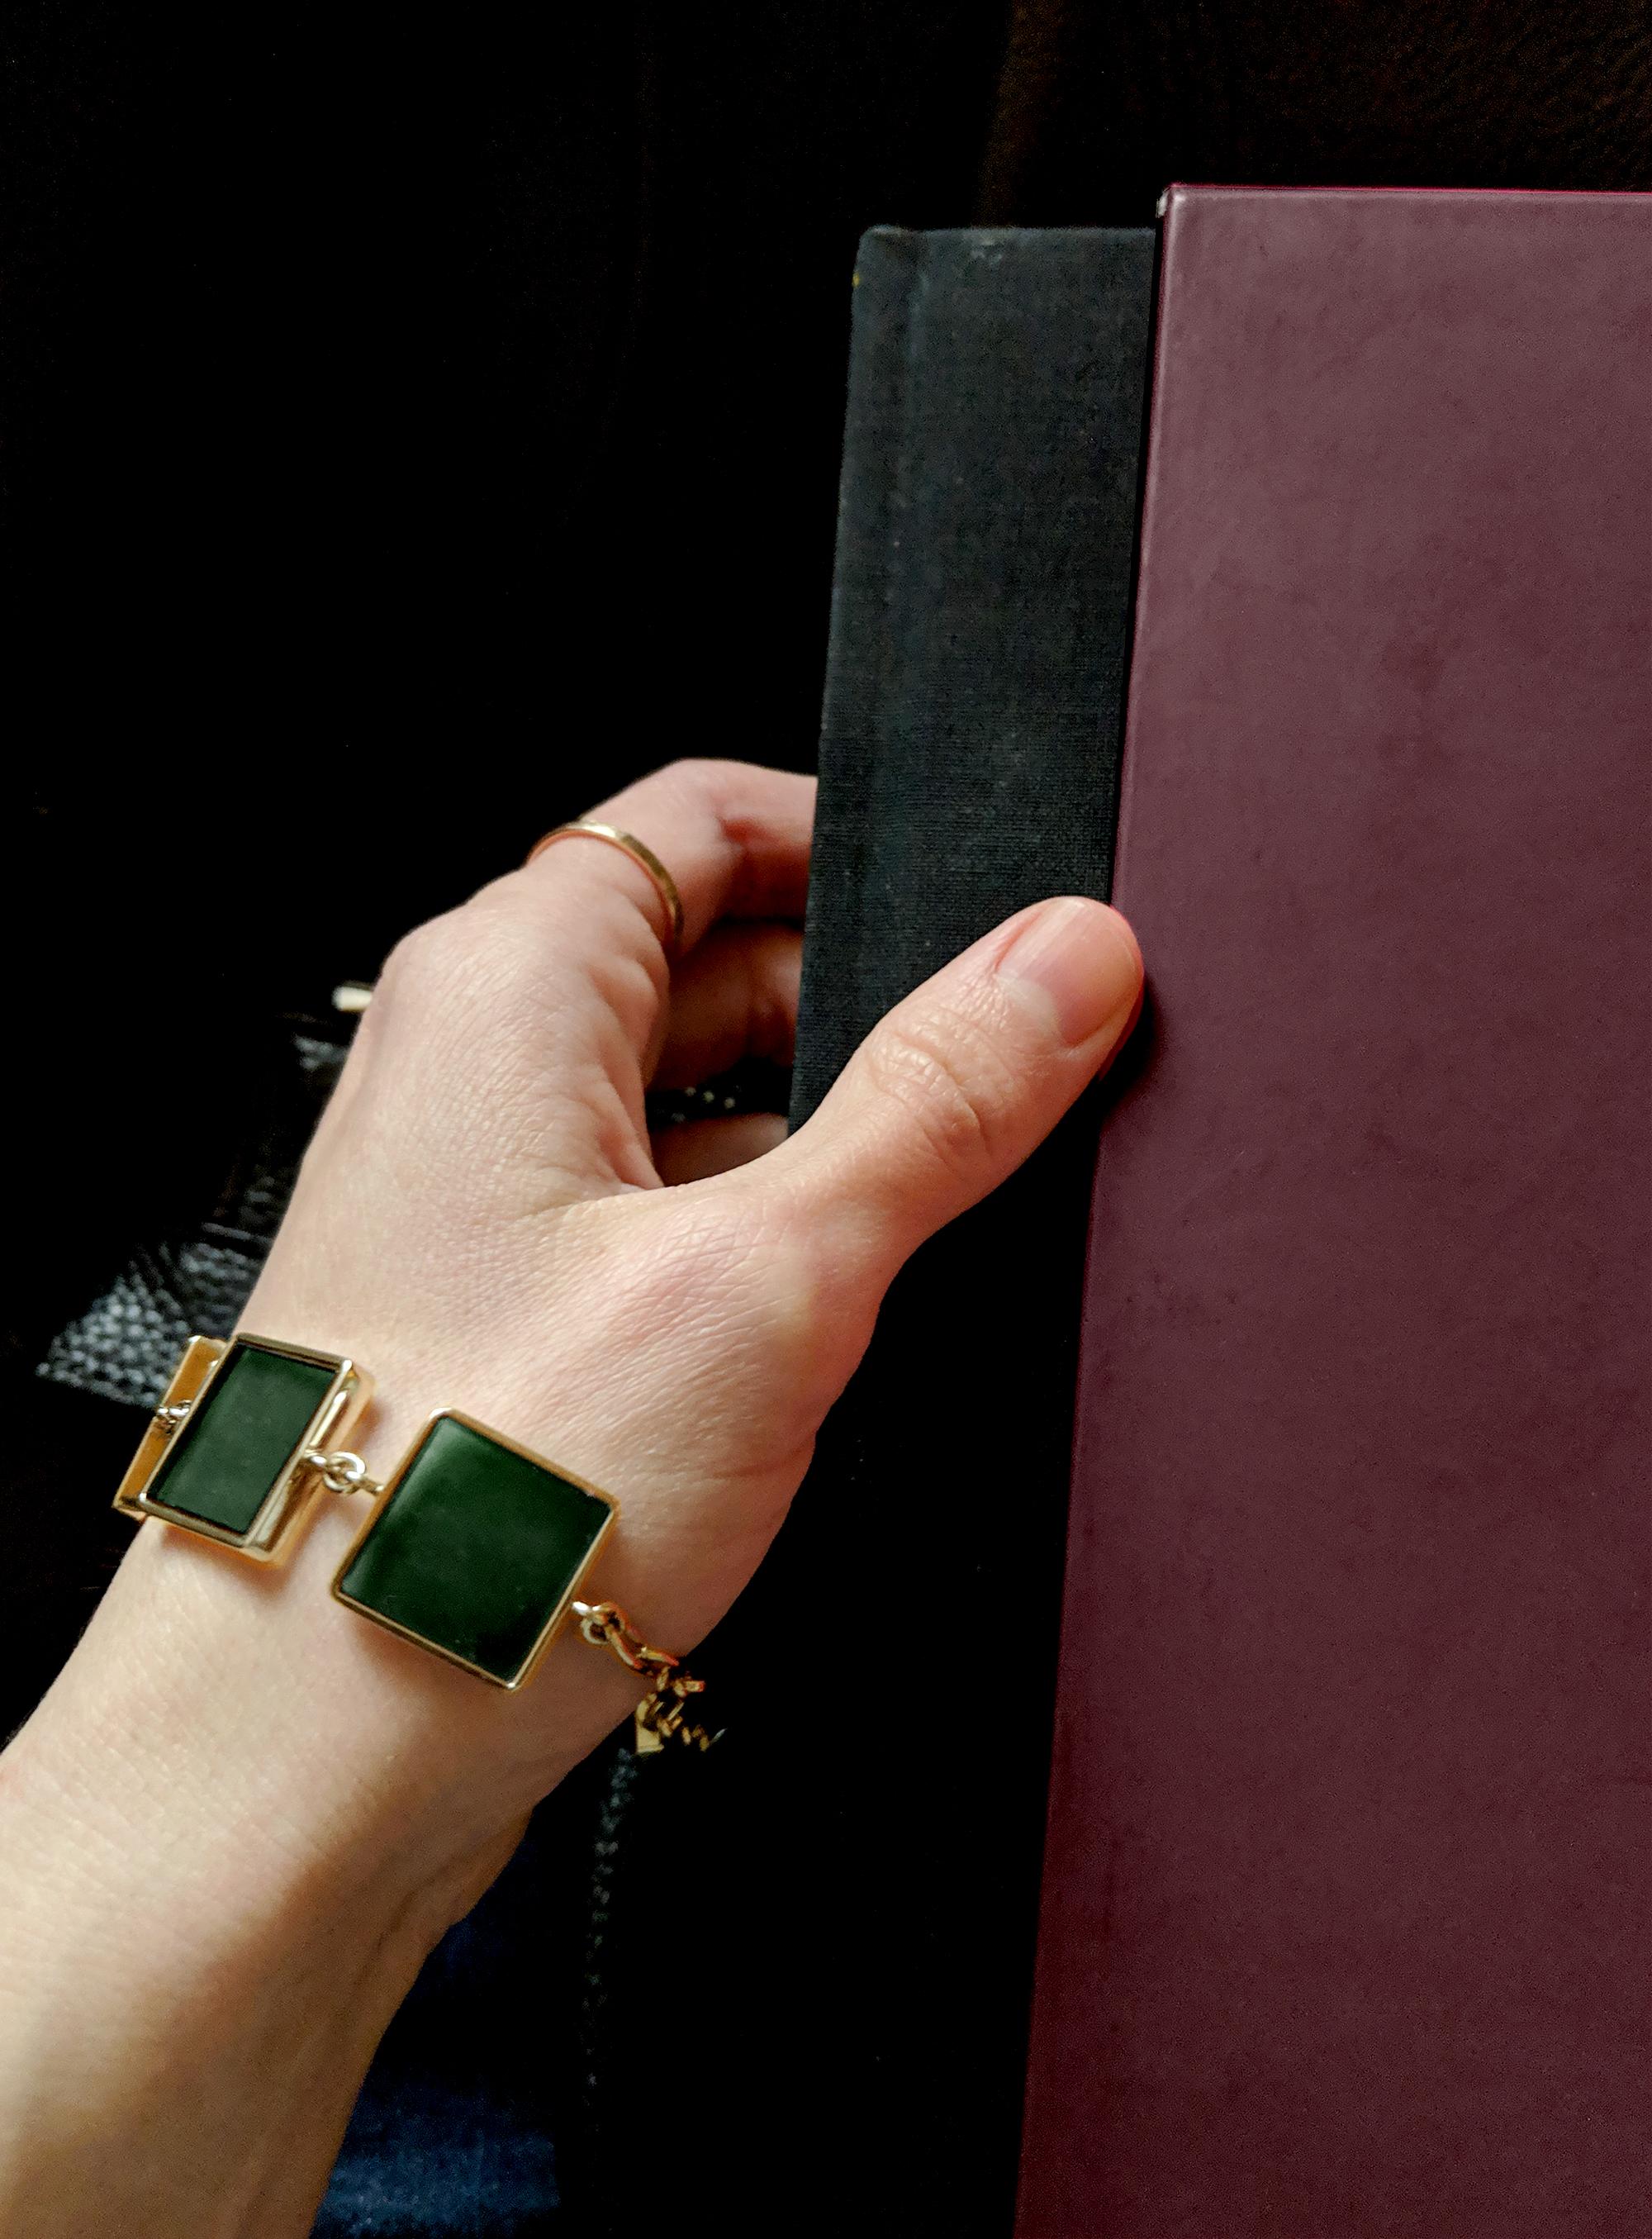 Le bracelet est conçu pour attirer le regard, avec sa coupe inhabituelle et la couleur vert profond des quartz cultivés en laboratoire. Les pierres précieuses sont ouvertes, laissant passer la lumière, ce qui donne au bracelet un aspect luxueux